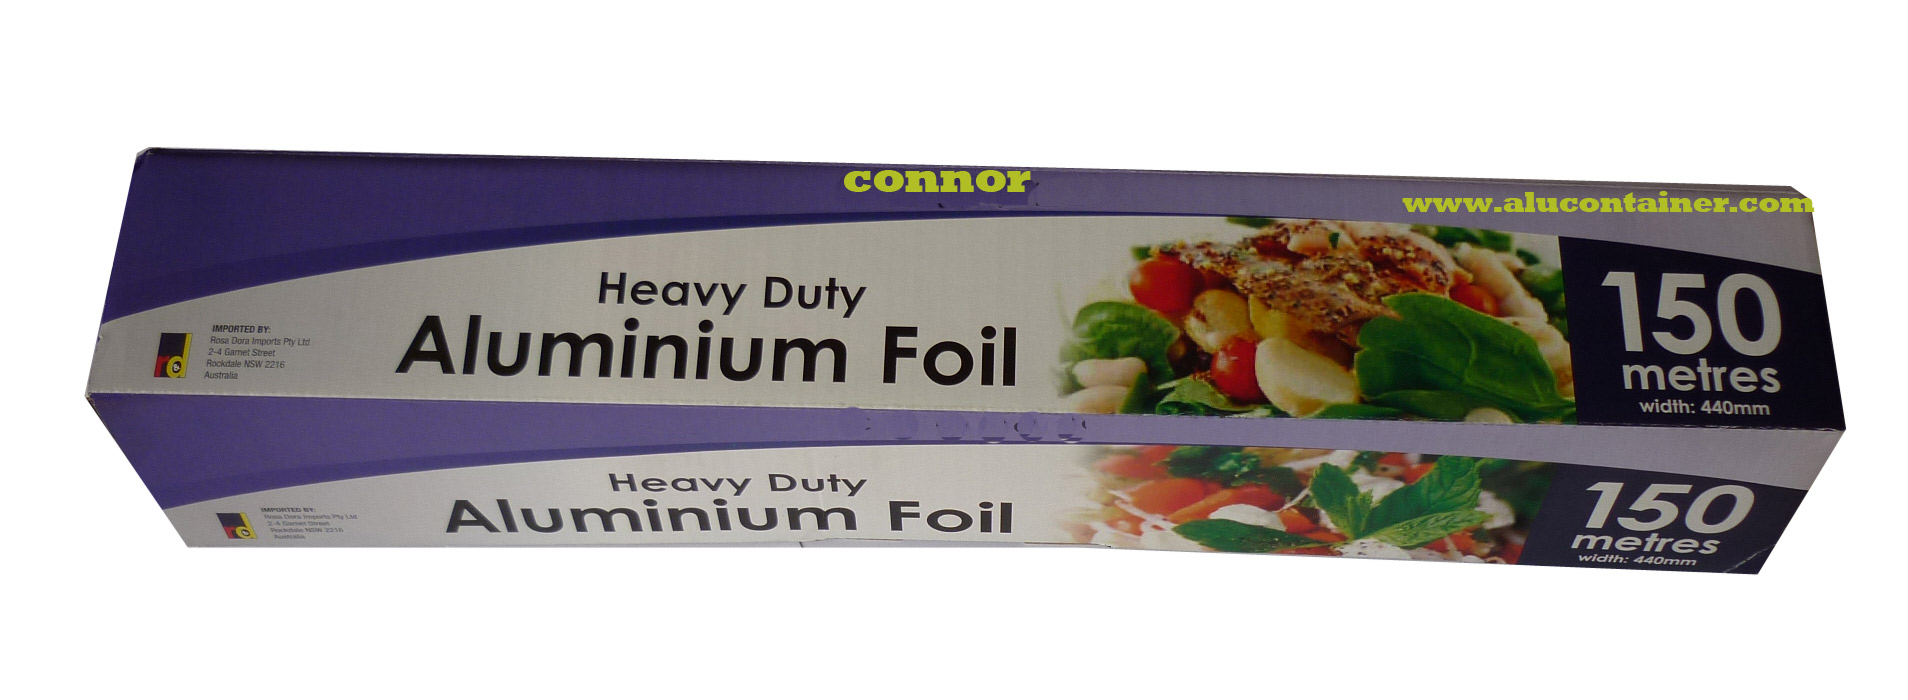 Heavy Duty Aluminum Foil Paper For Kitchen USe 150MX30CM